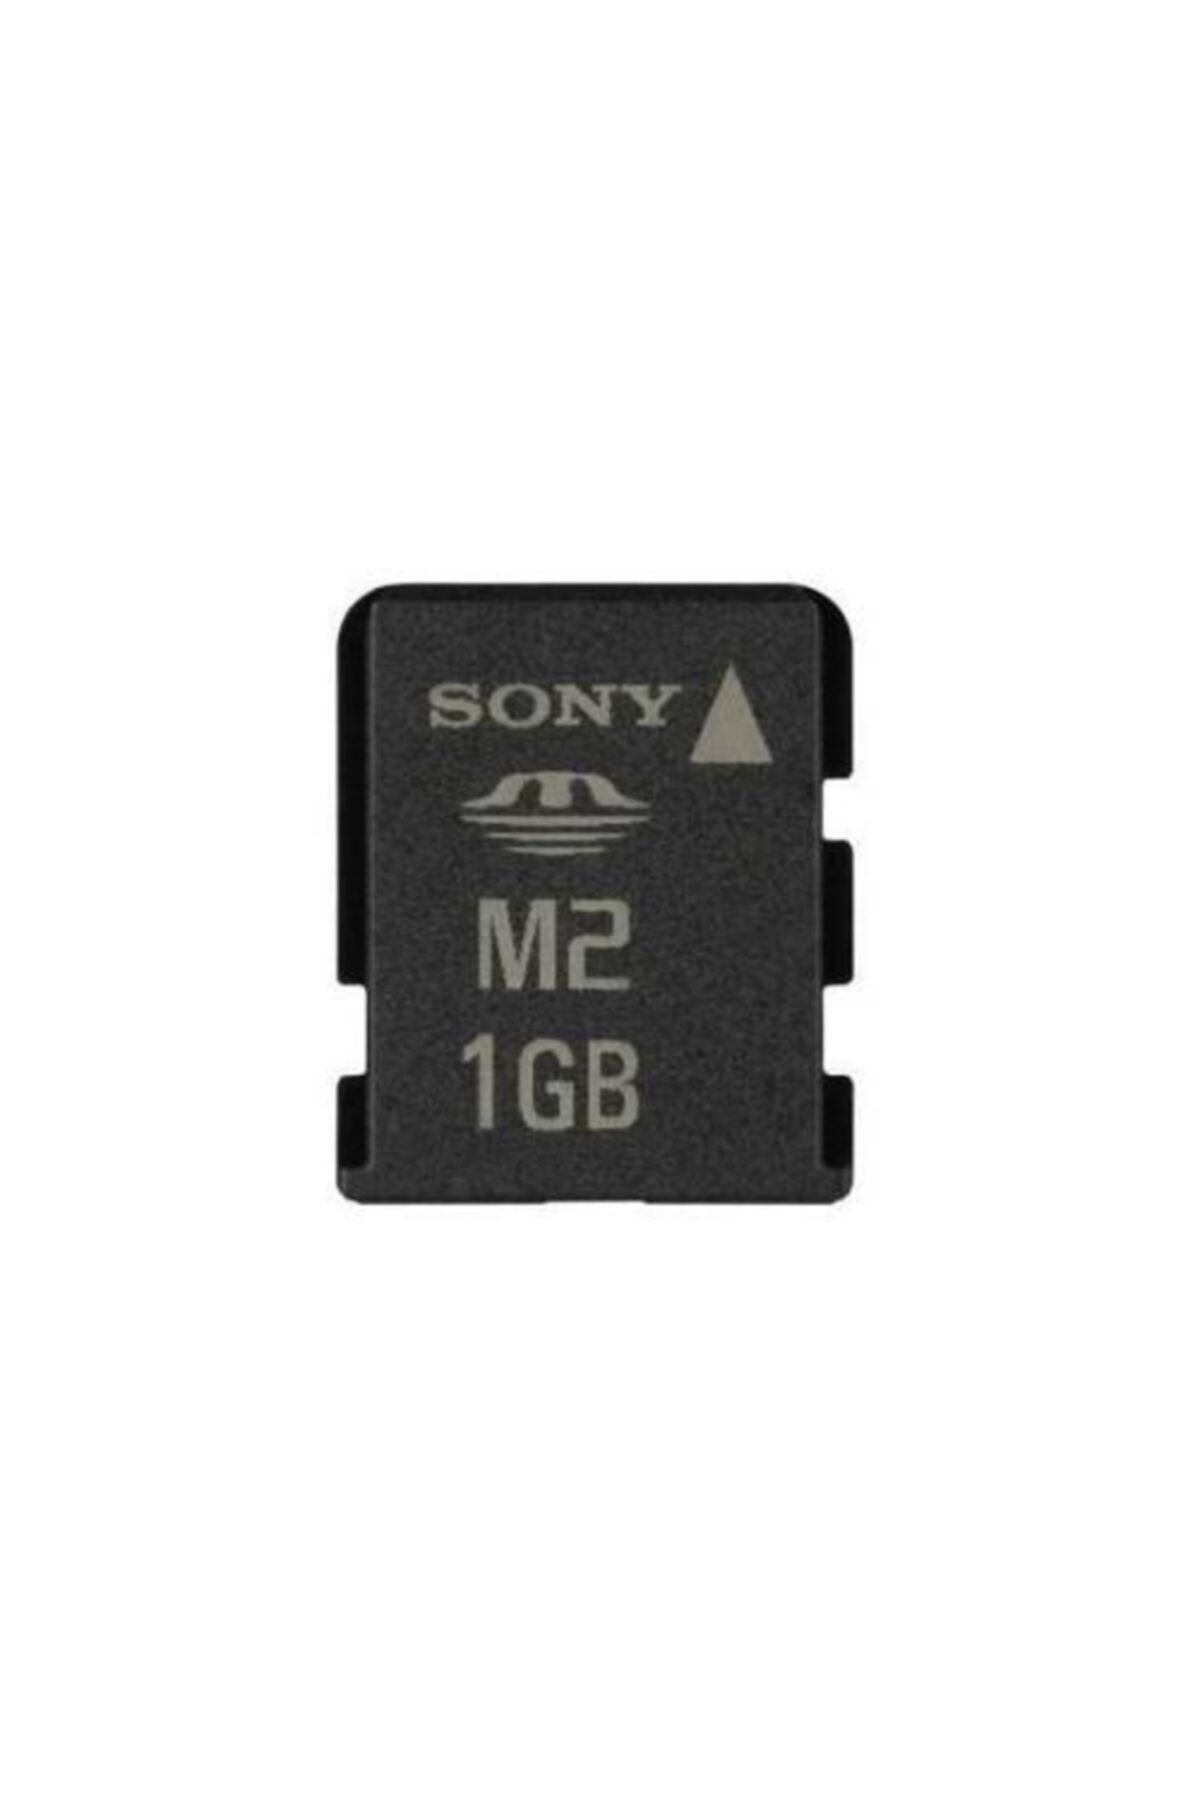 Sony M2 1gb Hafıza Kartı